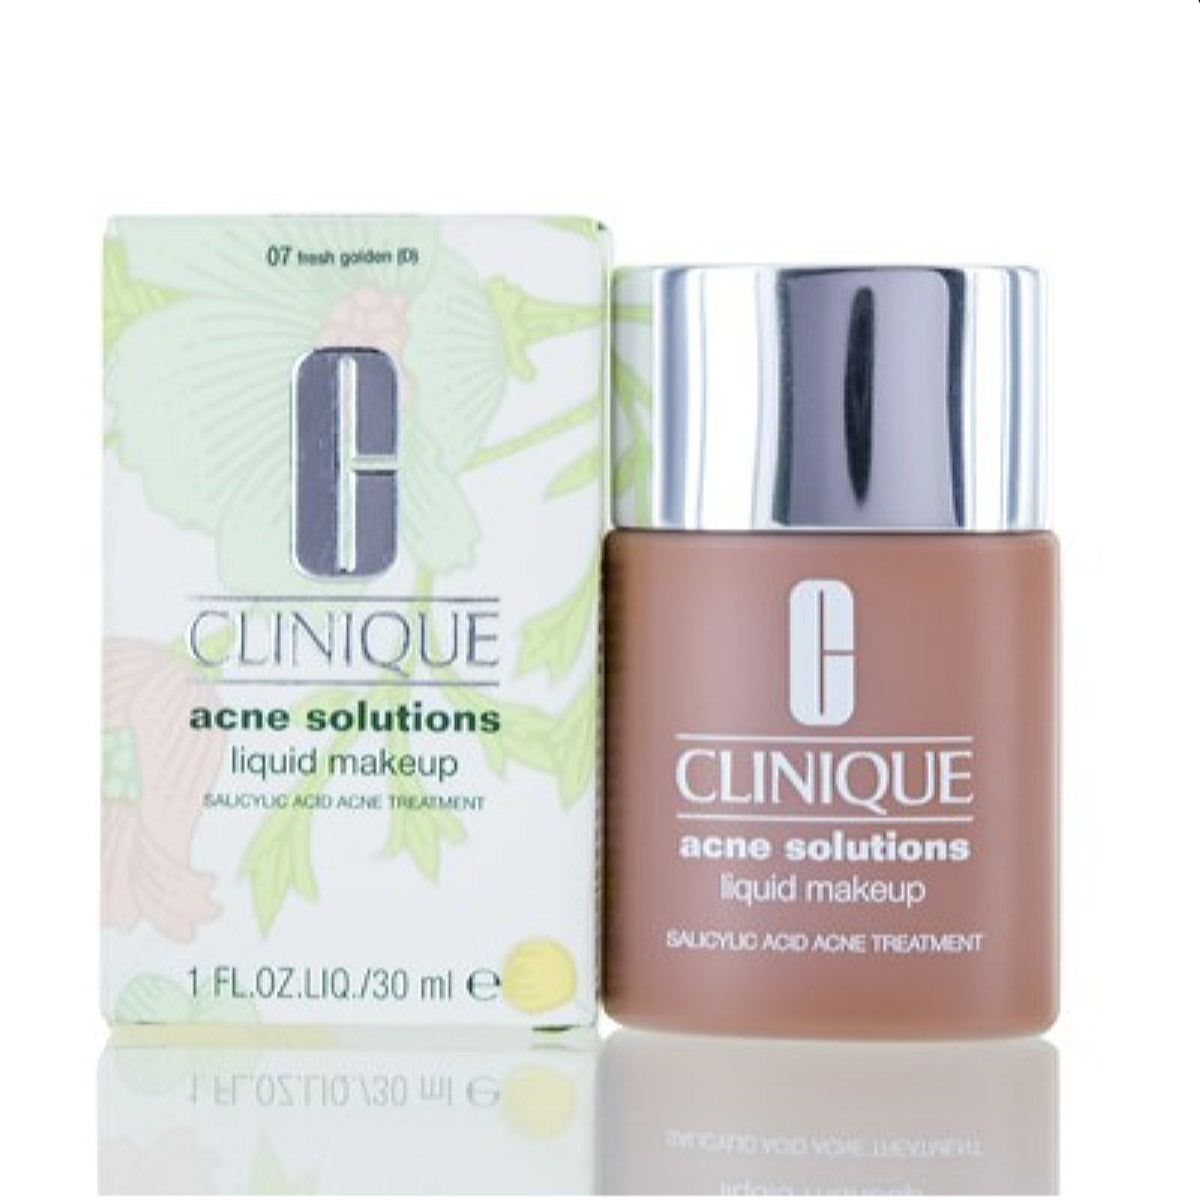 Clinique Acne Solutions Liquid Makeup 07 Fresh Golden 1.0 Oz 6WPR-07